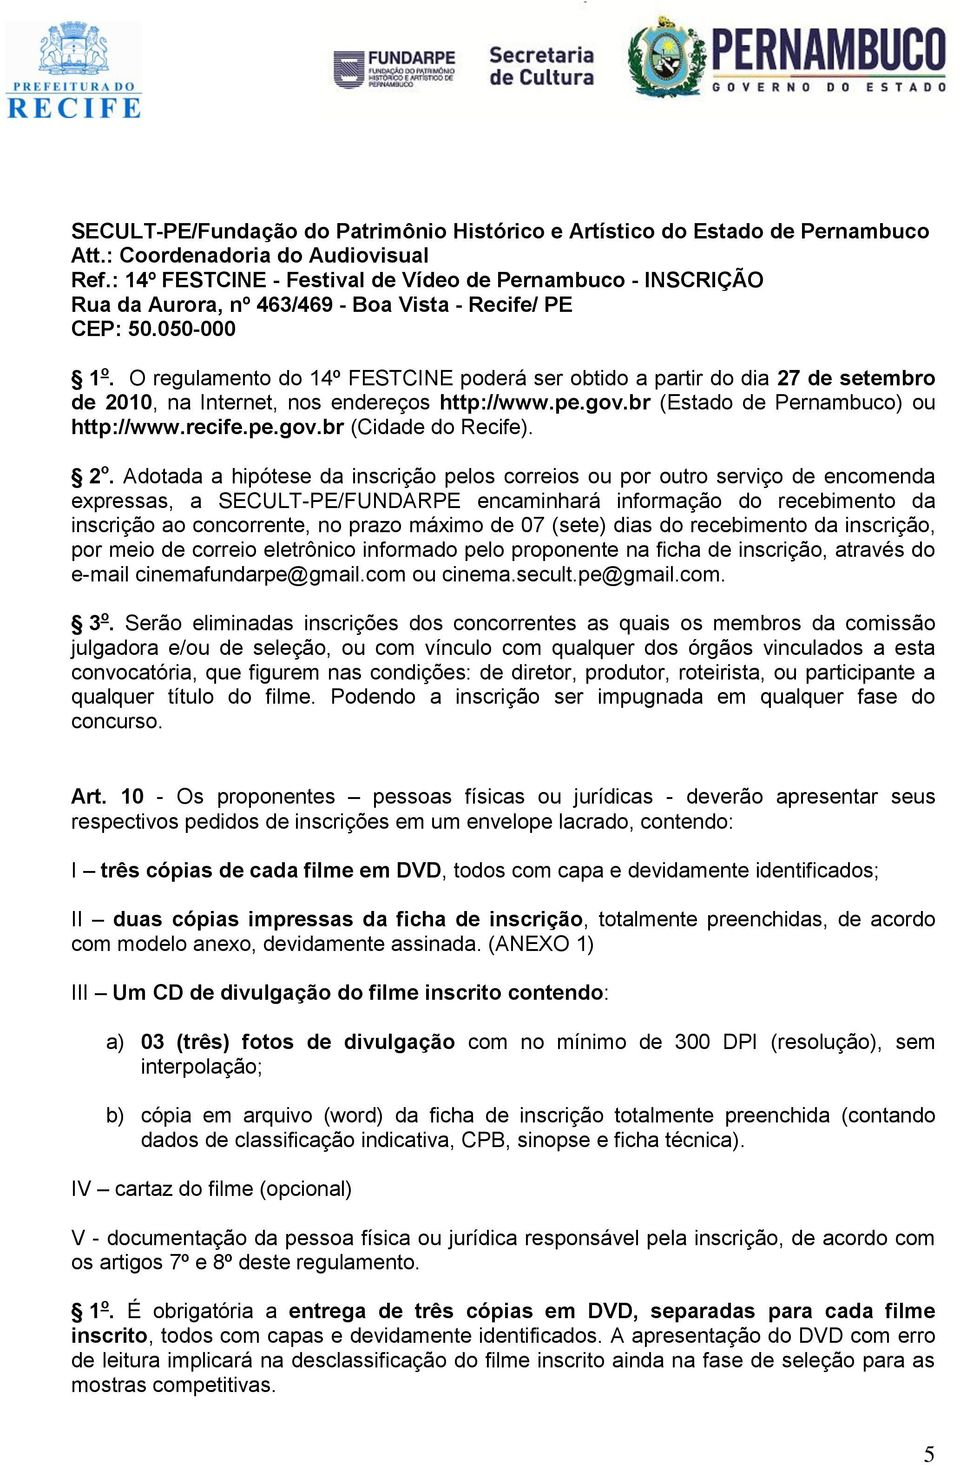 O regulamento do 14º FESTCINE poderá ser obtido a partir do dia 27 de setembro de 2010, na Internet, nos endereços http://www.pe.gov.br (Estado de Pernambuco) ou http://www.recife.pe.gov.br (Cidade do Recife).